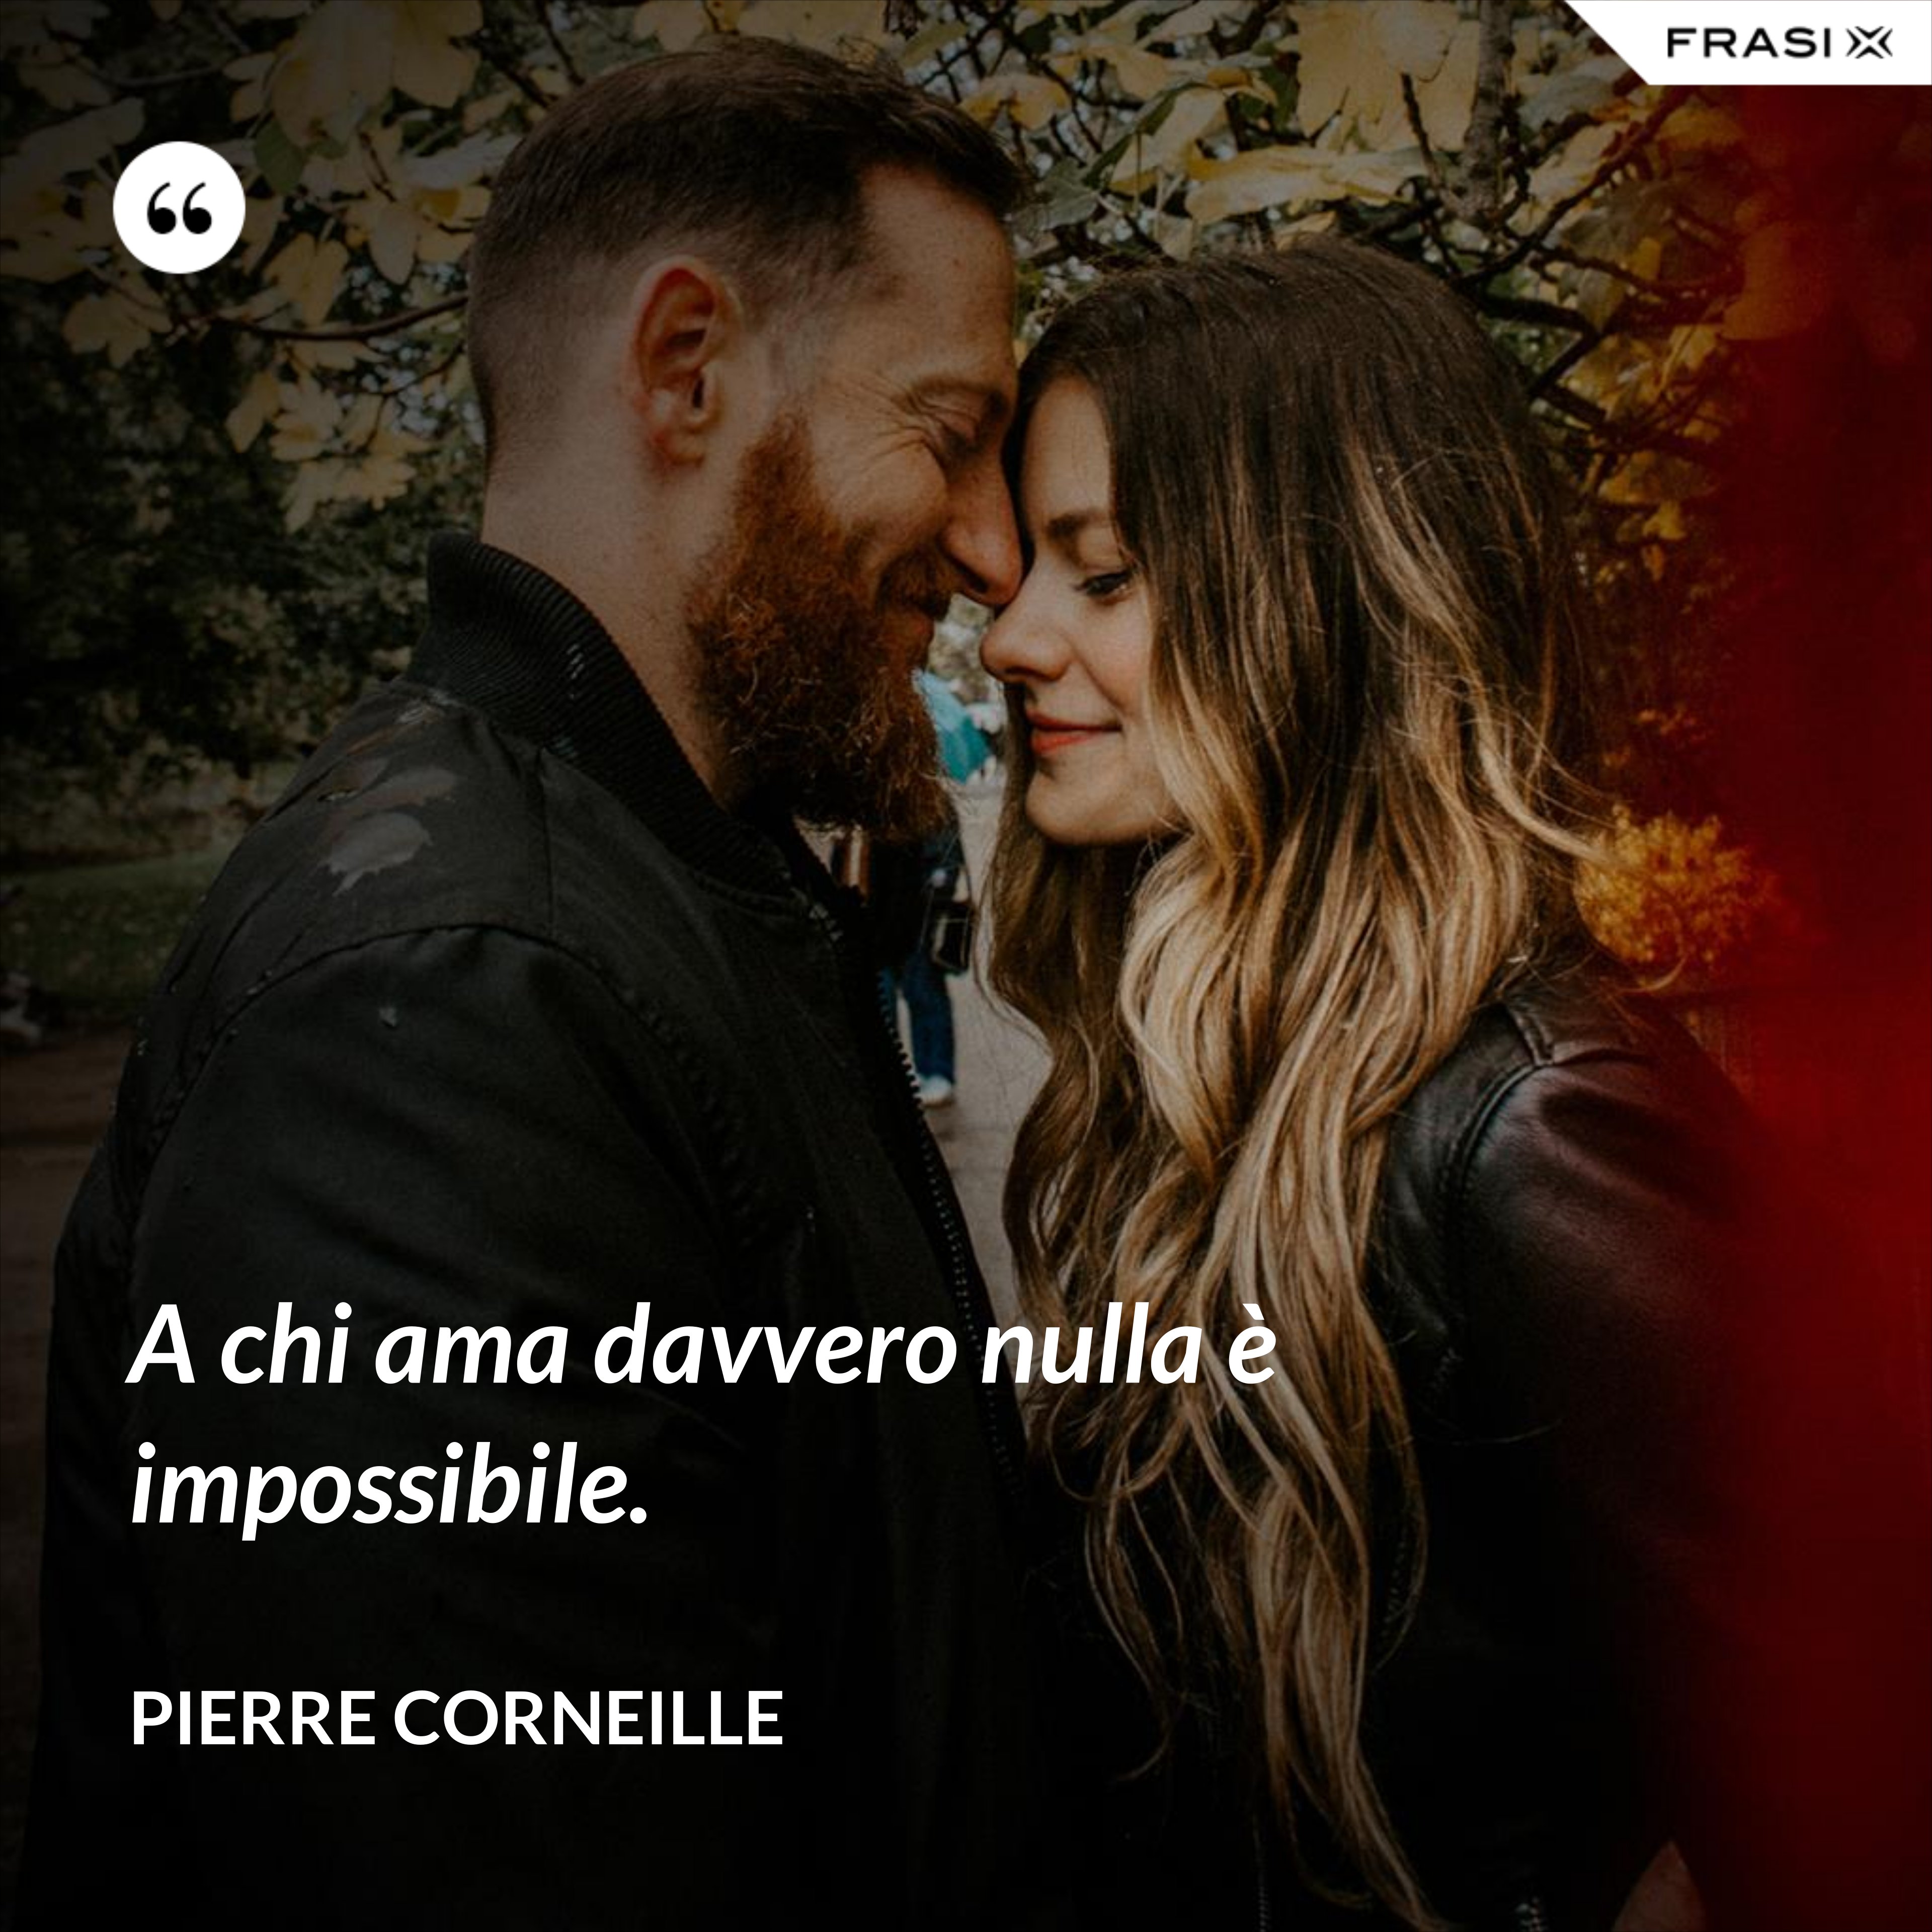 A chi ama davvero nulla è impossibile. - Pierre Corneille